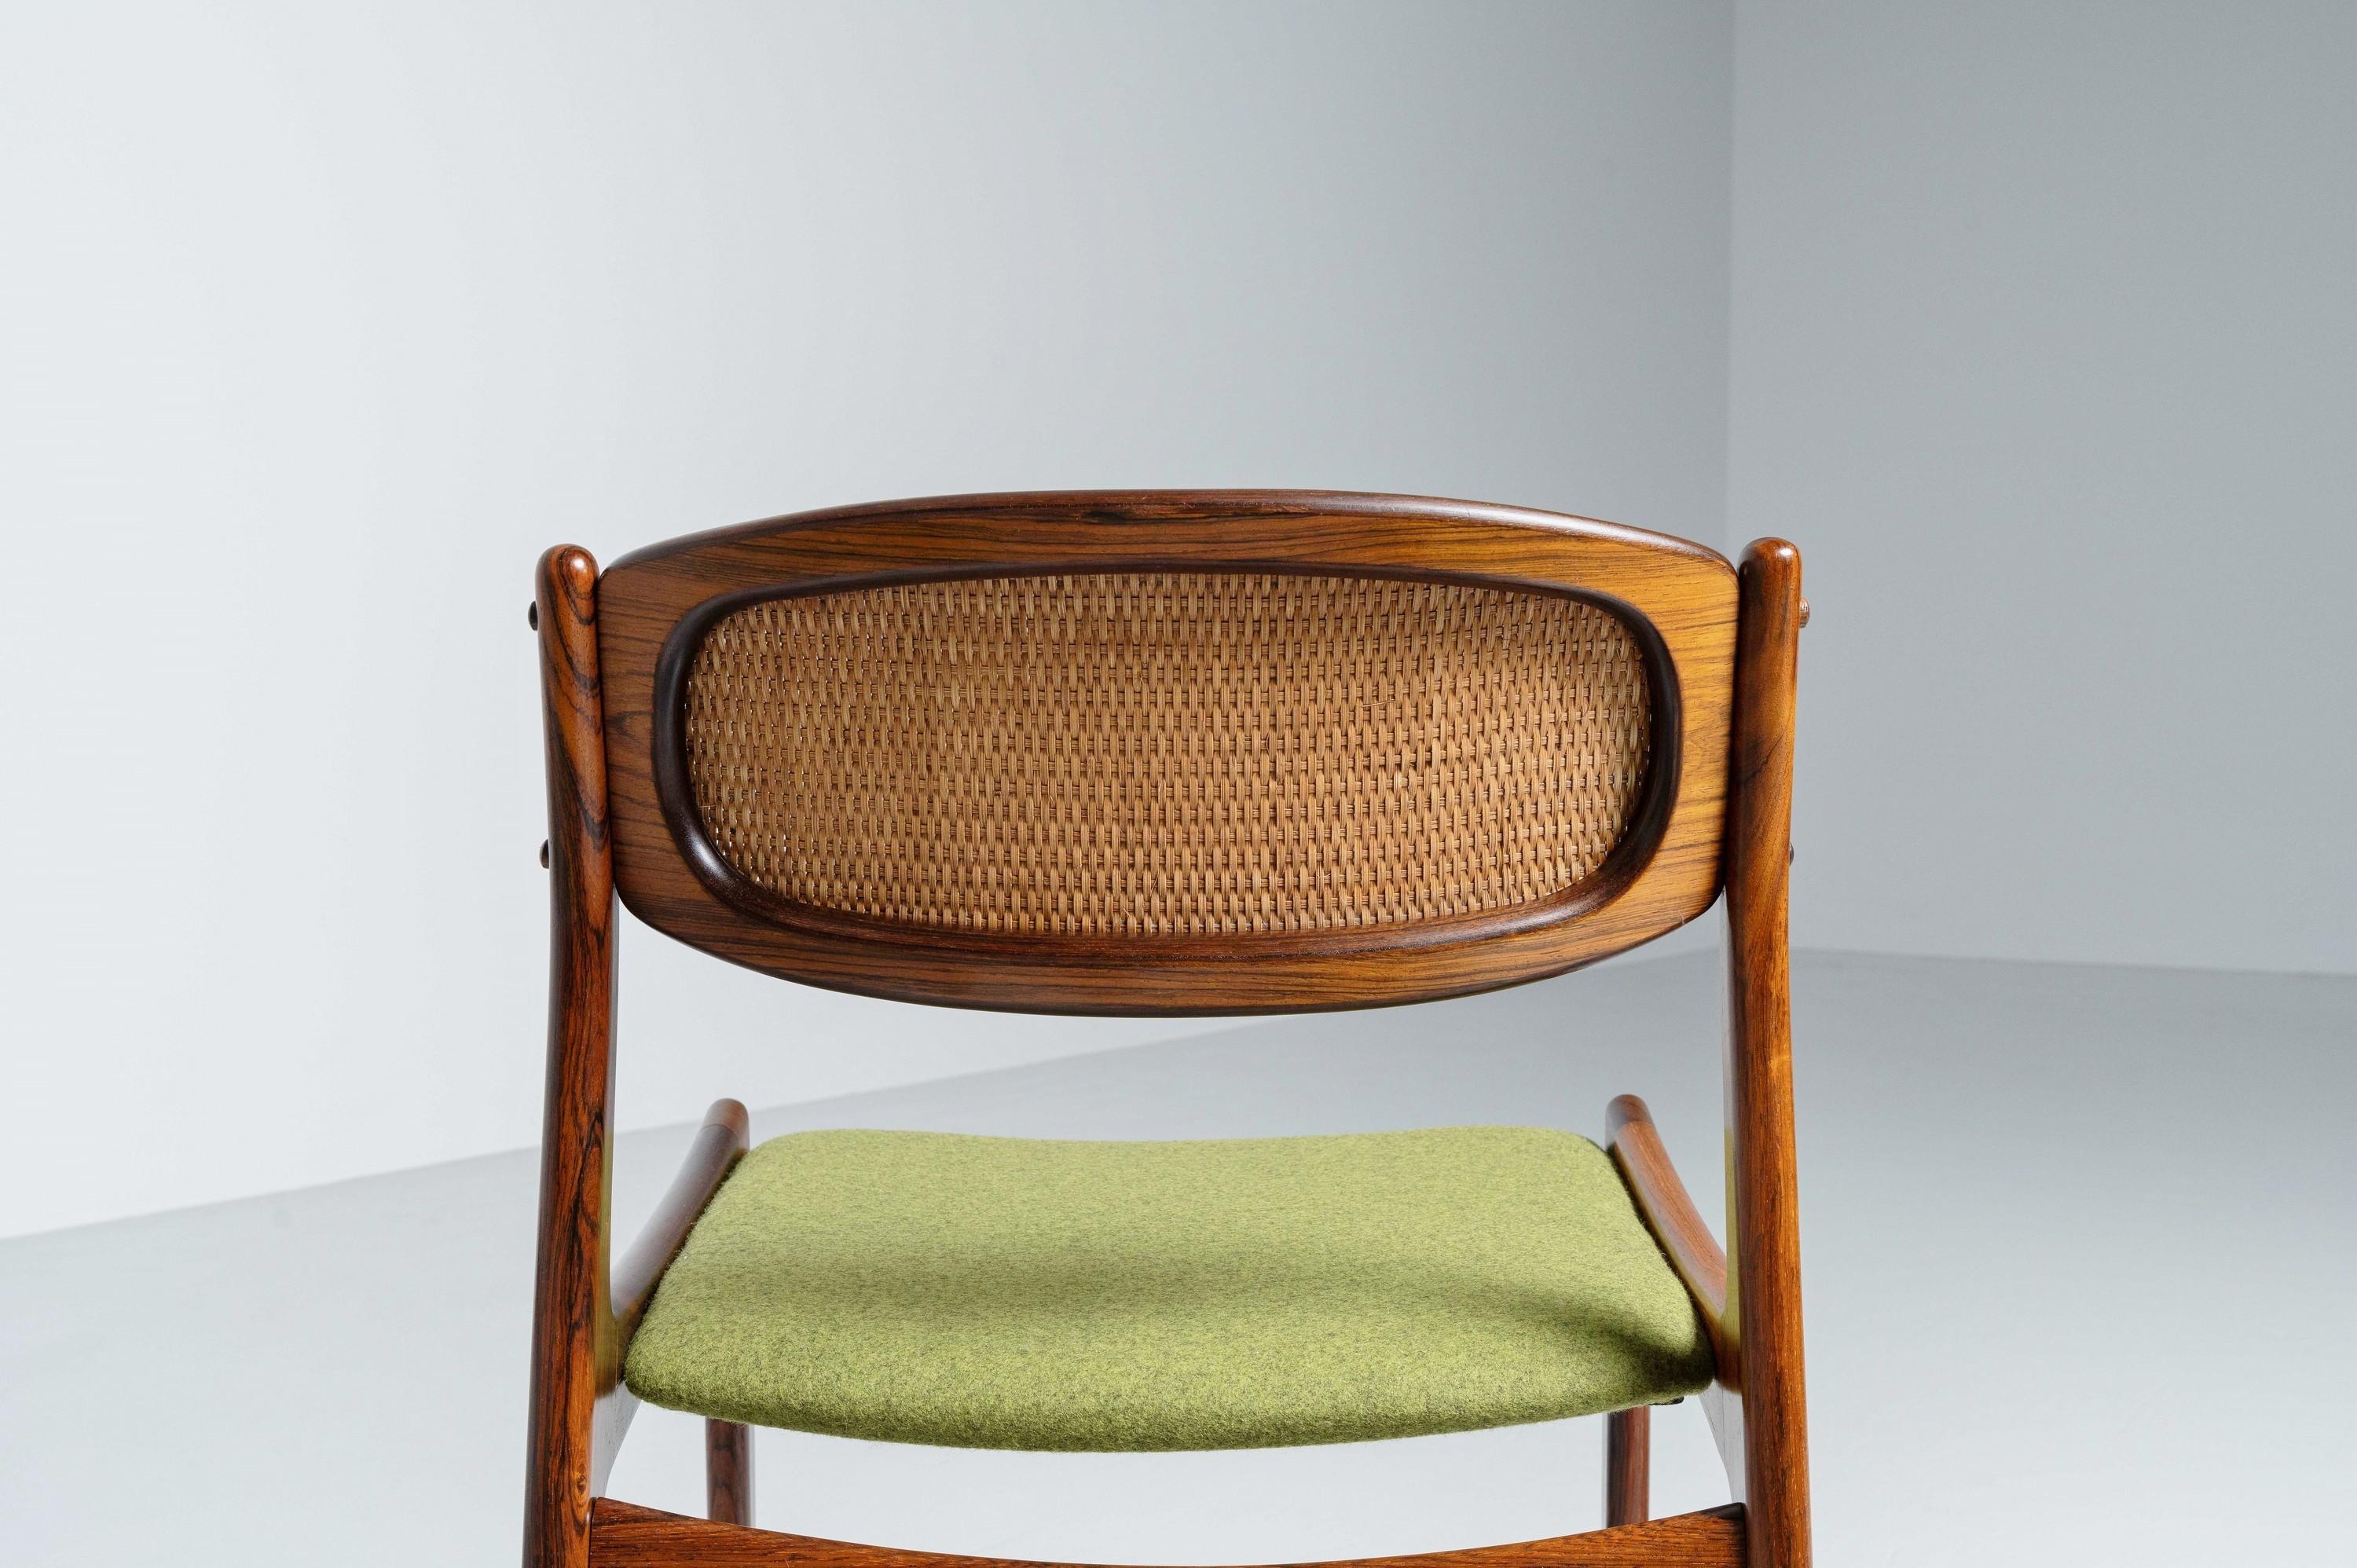 Upholstery Ib Kofod Larsen dining chairs by Chr. Linneberg Denmark 1960